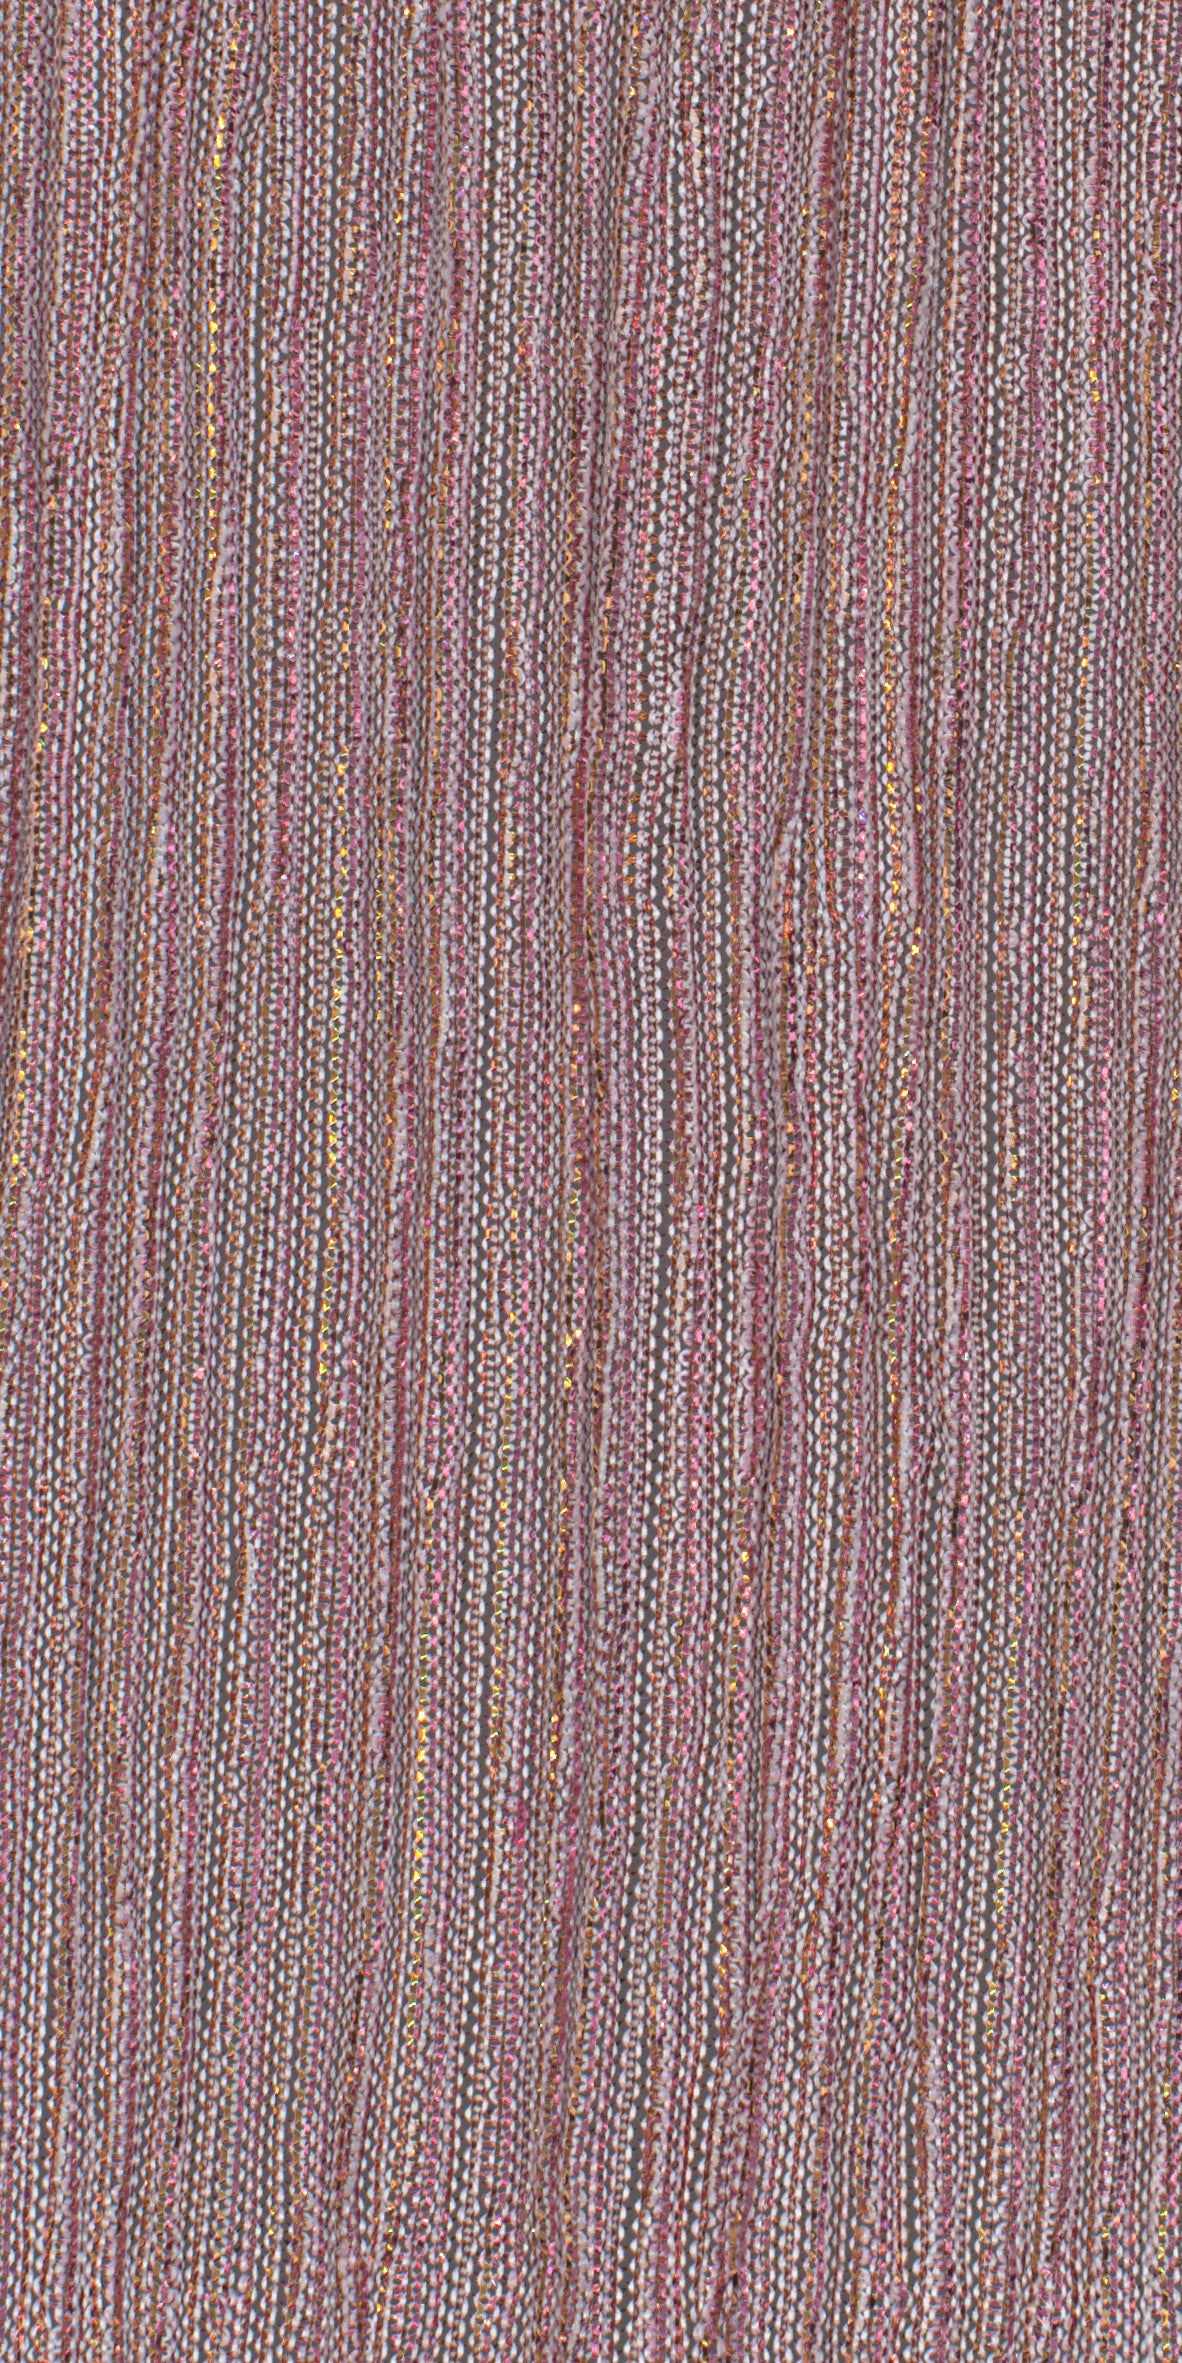 12006-12 Pink Gold Metallic Pleat Plain Dyed Blend 126g/yd 56&quot; blend gold knit metallic pink plain dyed pleat ppl new Metallic, Pleat - knit fabric - woven fabric - fabric company - fabric wholesale - fabric b2b - fabric factory - high quality fabric - hong kong fabric - fabric hk - acetate fabric - cotton fabric - linen fabric - metallic fabric - nylon fabric - polyester fabric - spandex fabric - chun wing hing - cwh hk - fabric worldwide ship - 針織布 - 梳織布 - 布料公司- 布料批發 - 香港布料 - 秦榮興